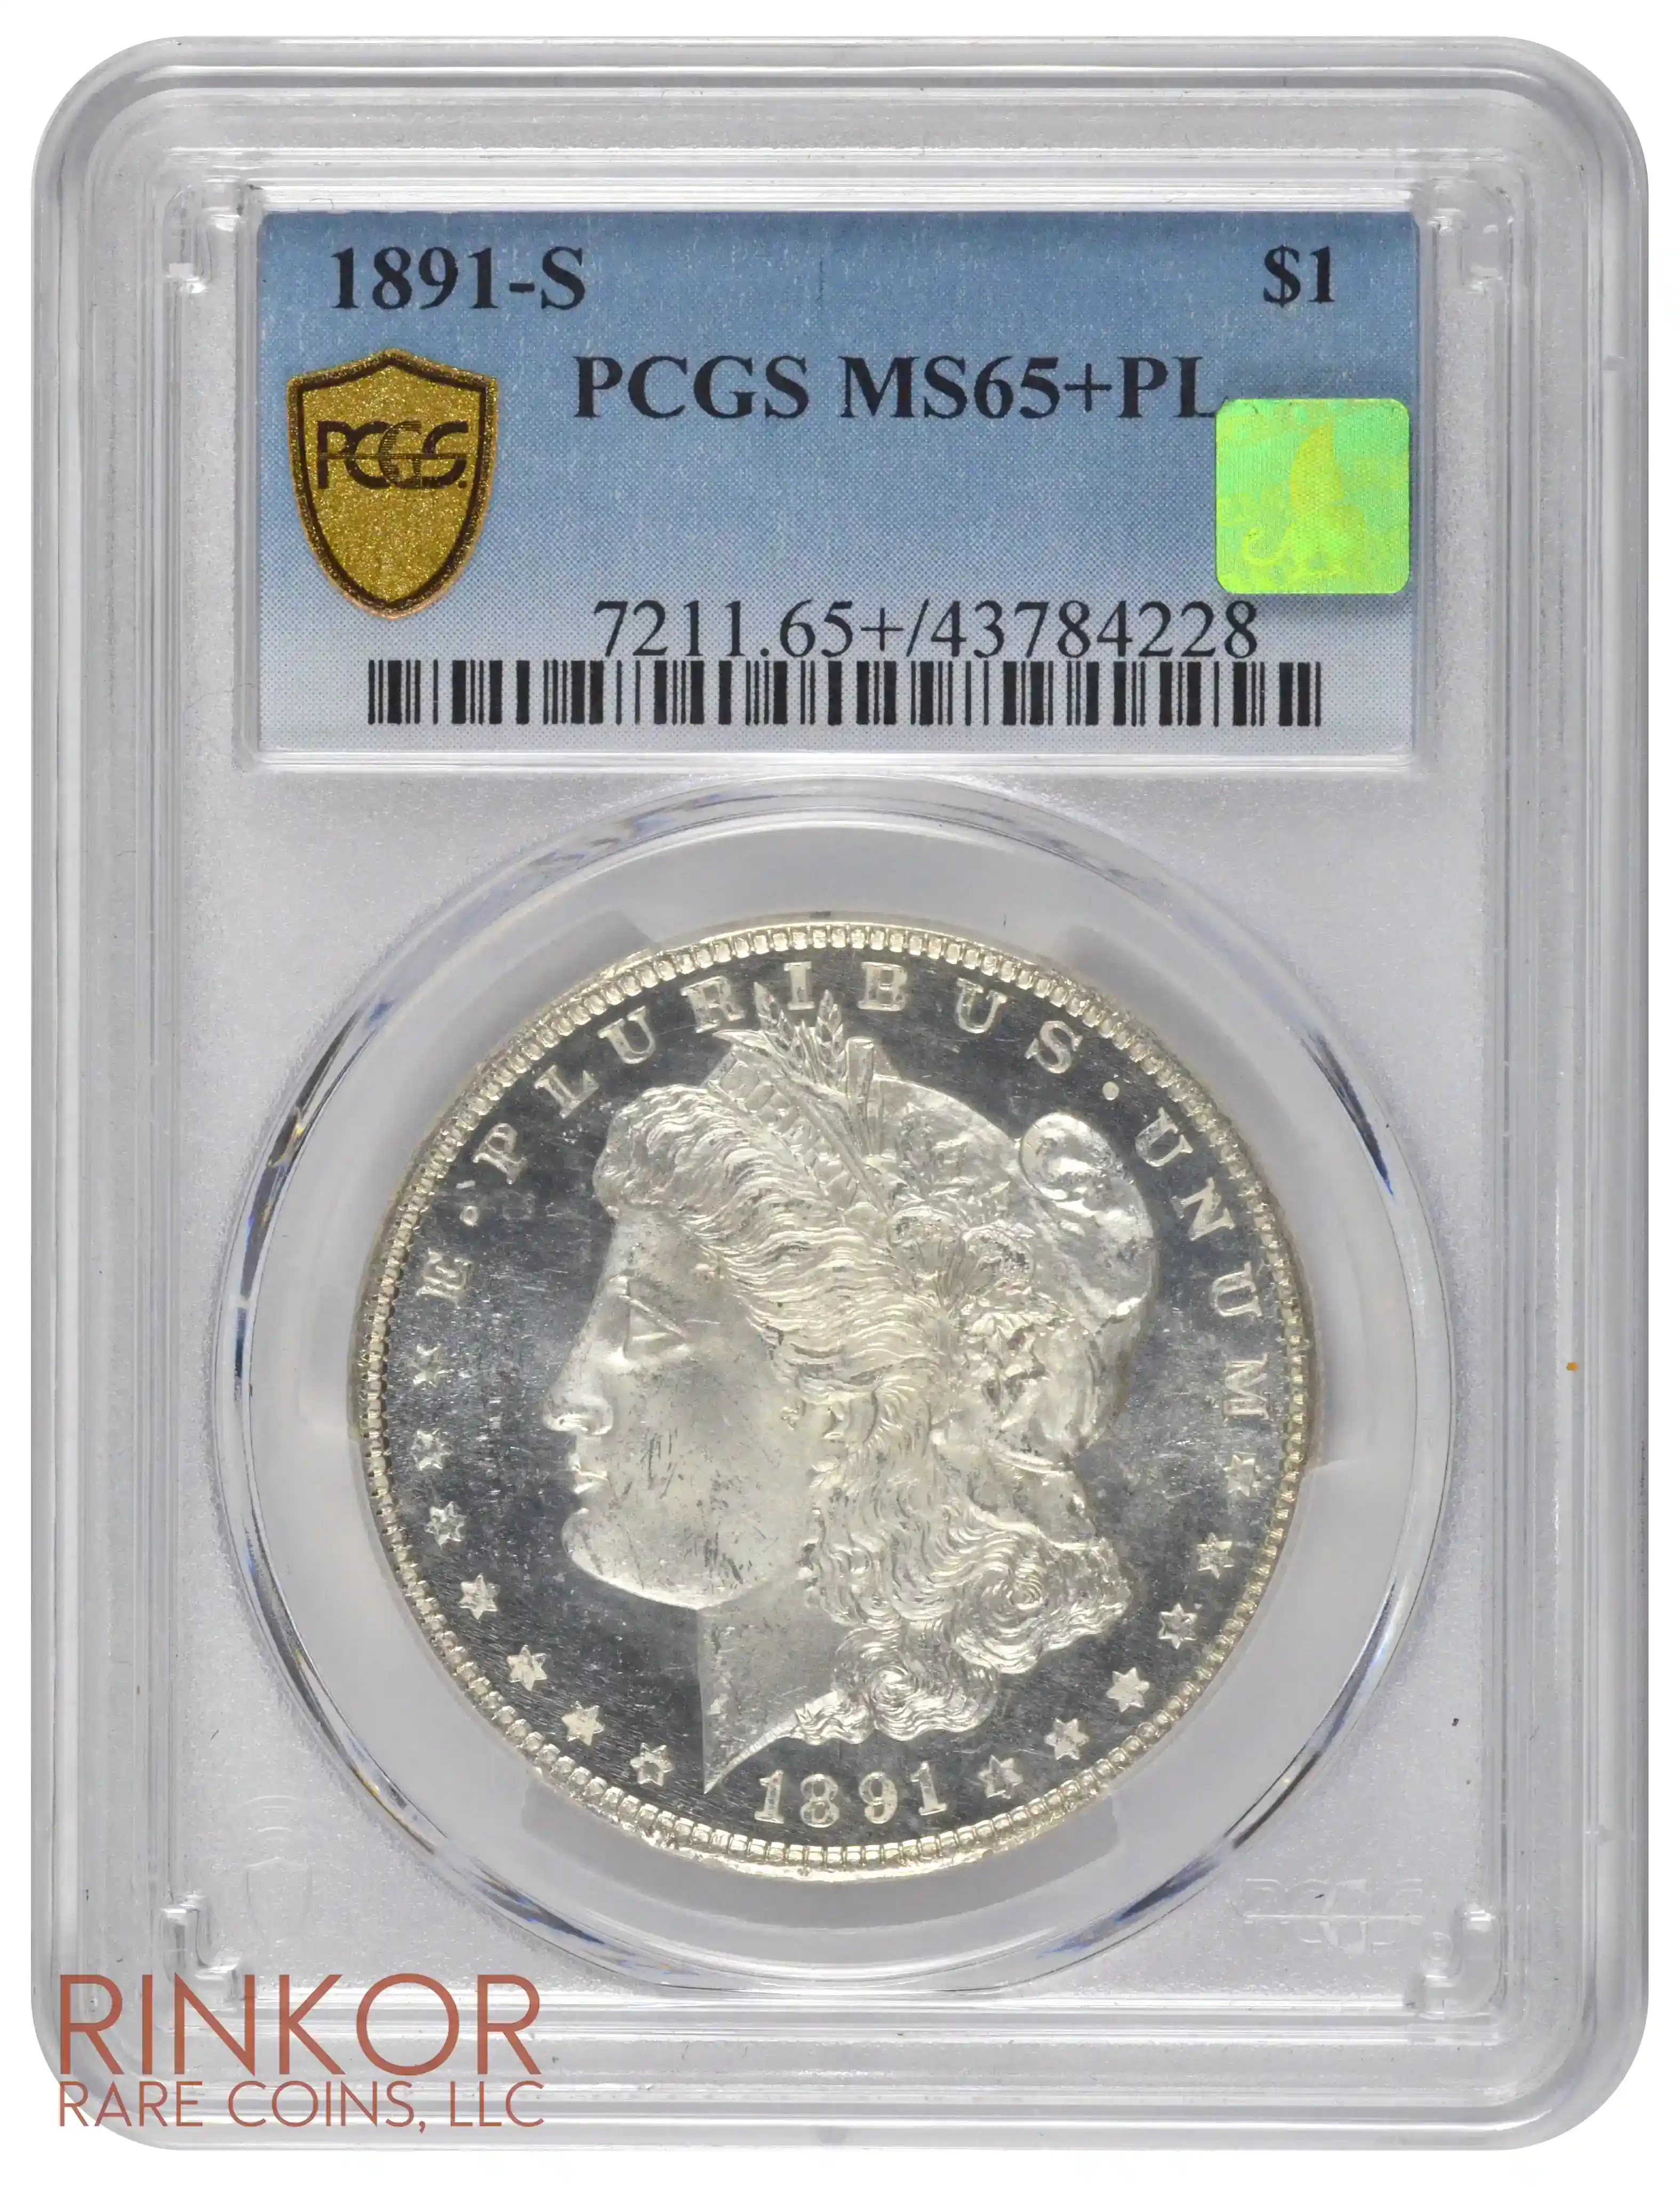 1891-S $1 PCGS MS 65+ PL